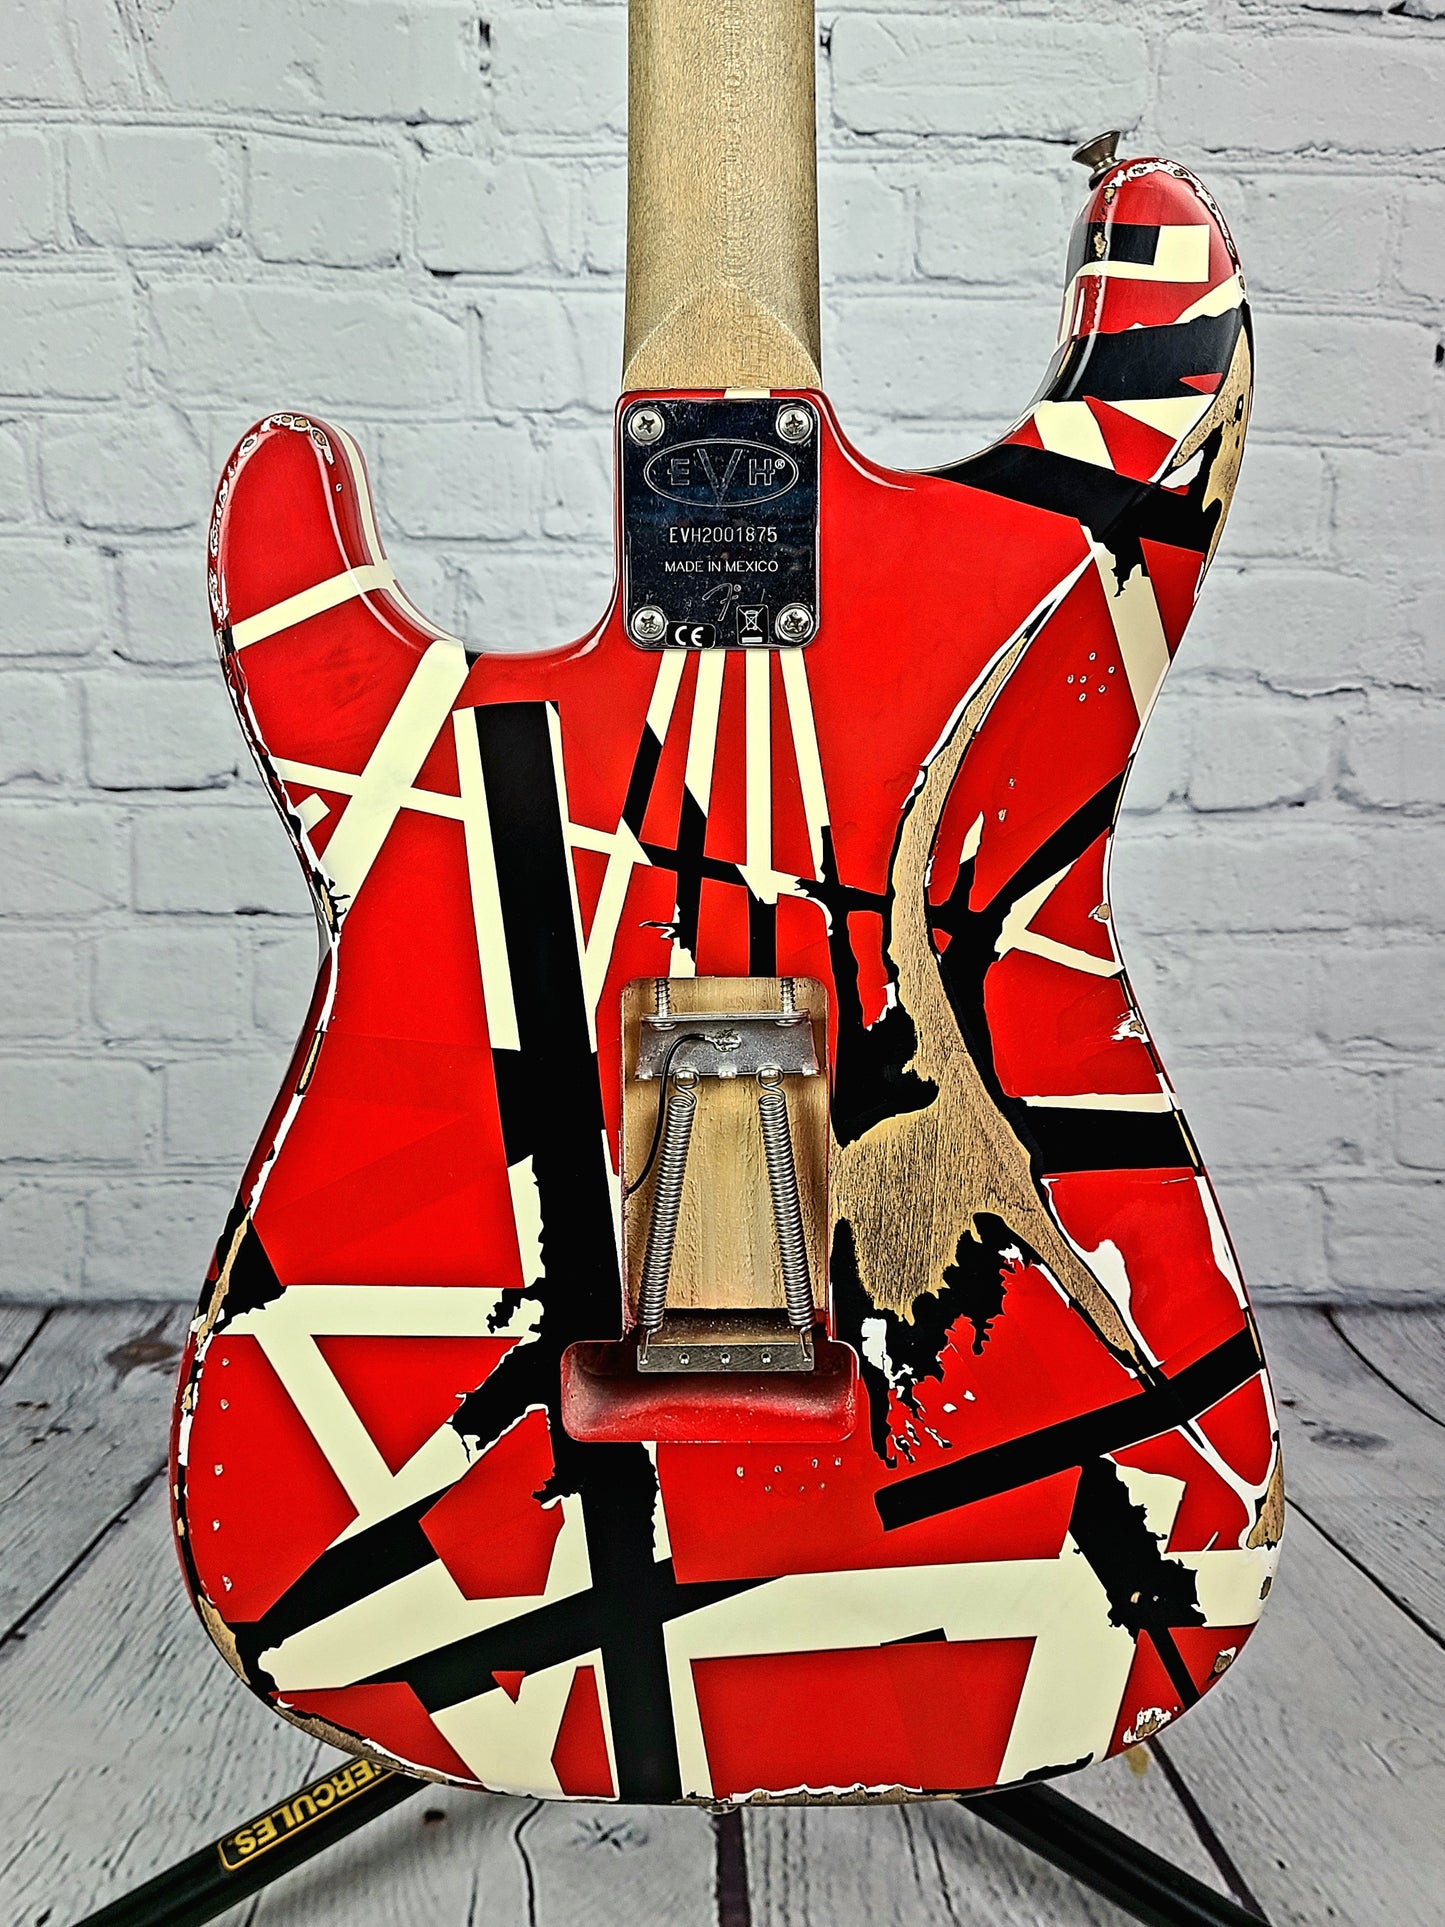 USED EVH "Frankie" Striped Eddie Van Halen Relic Distressed Electric Guitar 2020